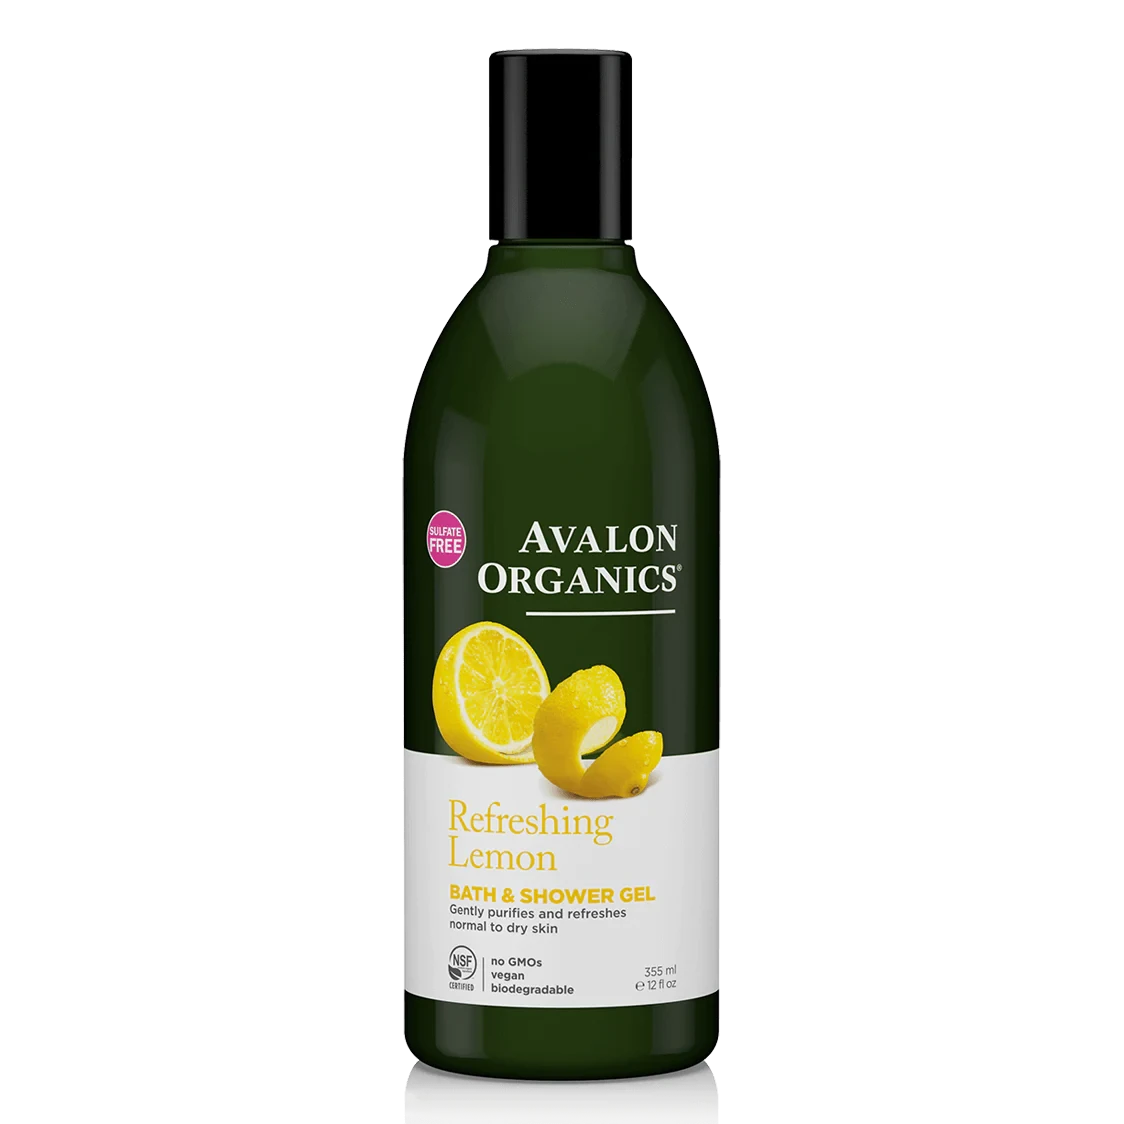 Avalon Organics Refreshing Lemon Bath & Shower Gel